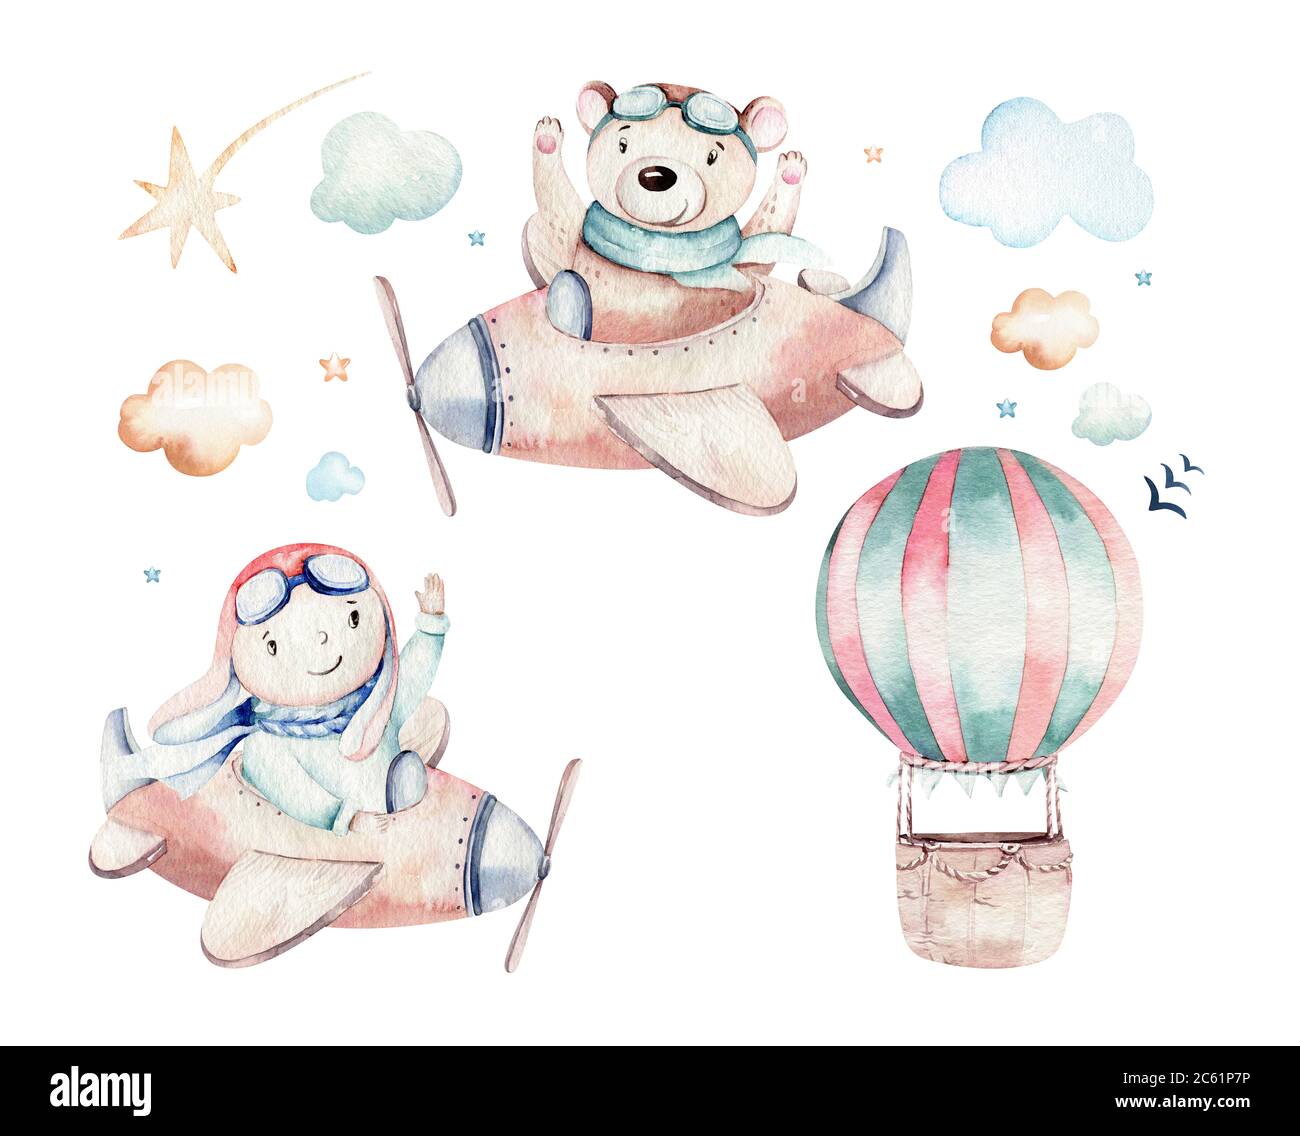 Aquarelle ballon ensemble bébé dessin animé mignon pilote aviation illustration. Ballons de transport de ciel avec girafe et éléphant, koala, ours et oiseau, nuages Banque D'Images